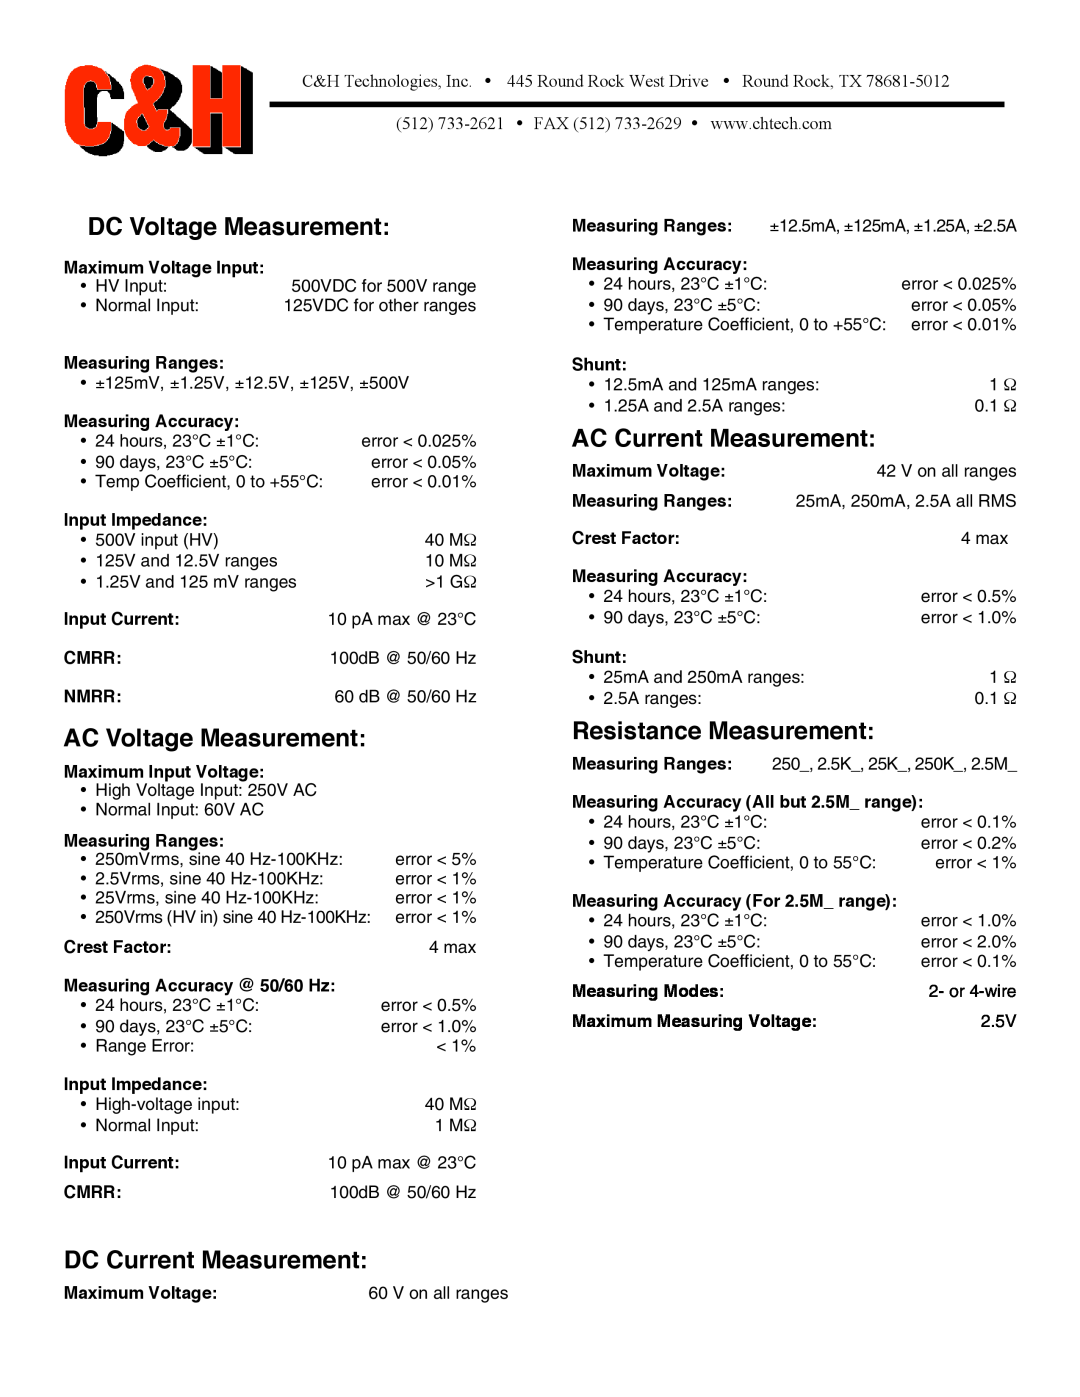 CH Tech PX454S DC Voltage Measurement, AC Voltage Measurement, Resistance Measurement, DC Current Measurement 